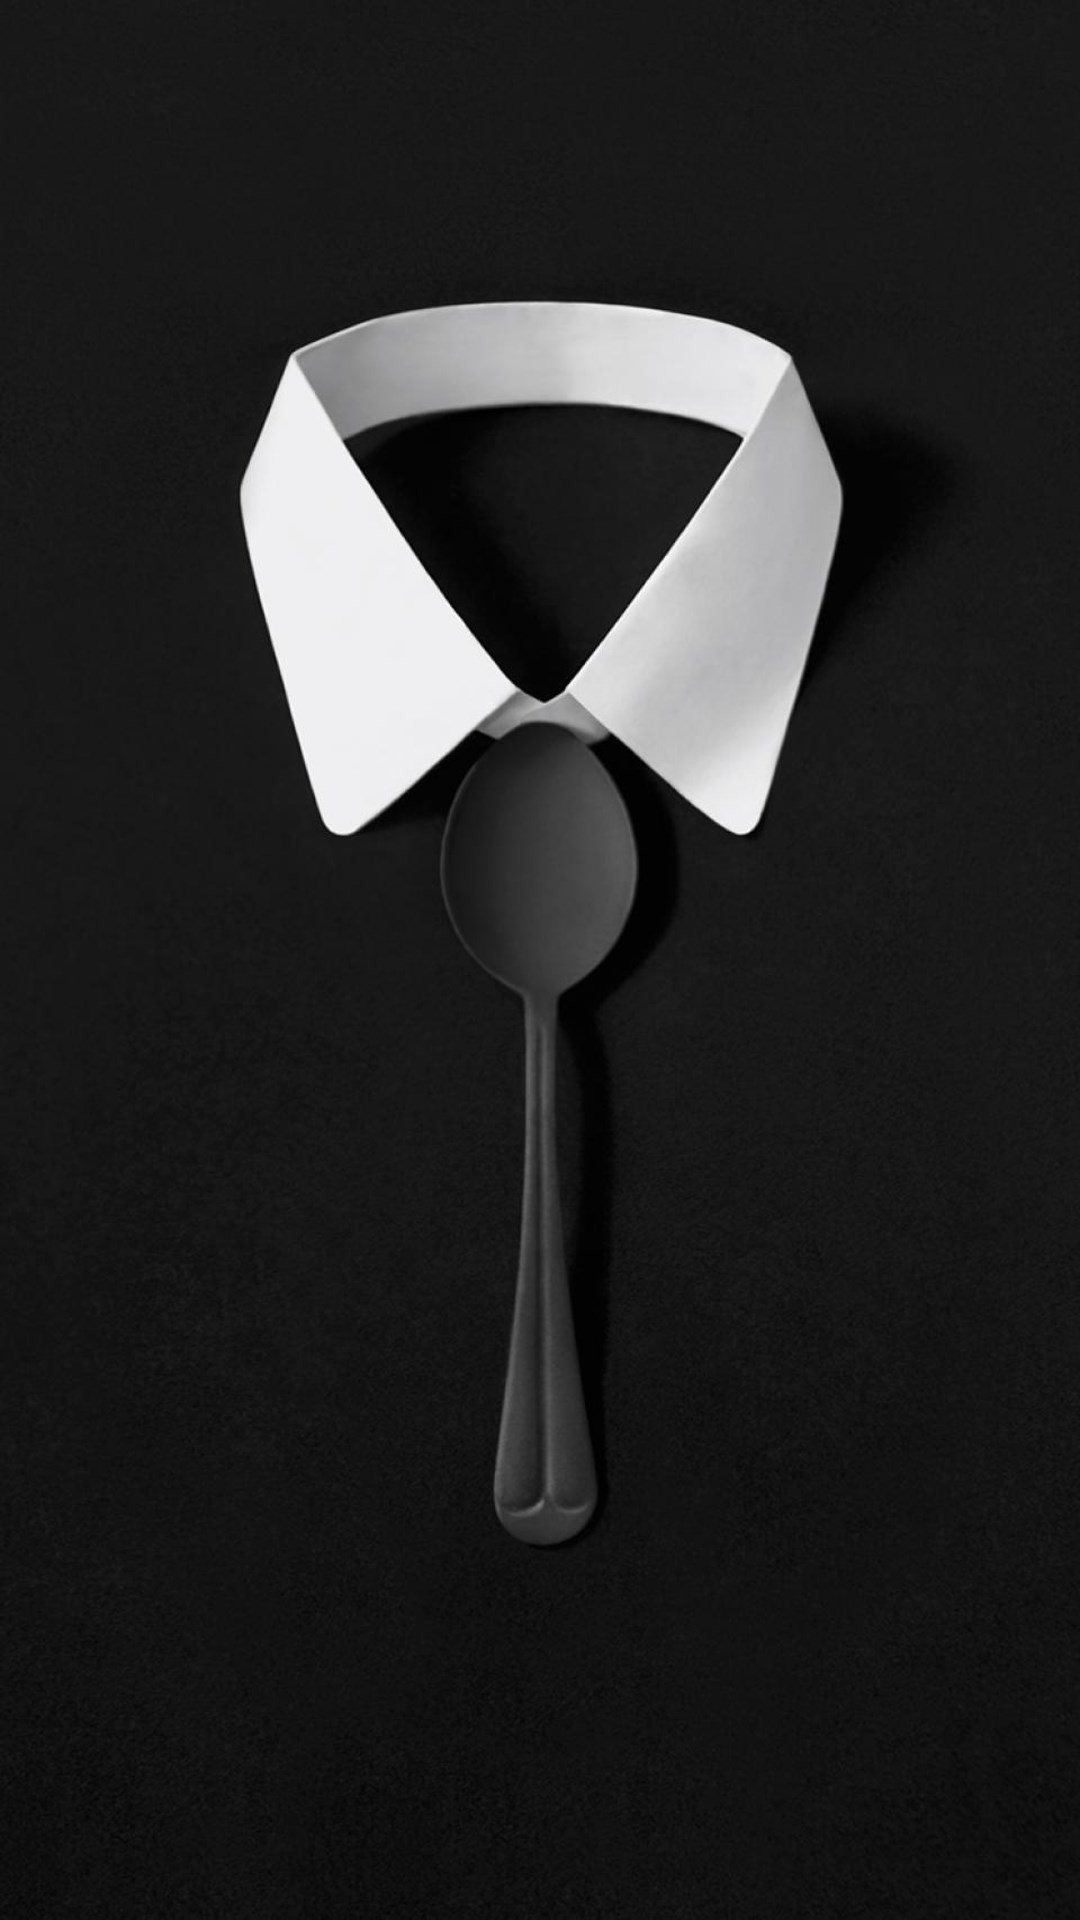 1080x1920 Dark Simple Suit Spoon Tie Simple iPhone 8 wallpaper